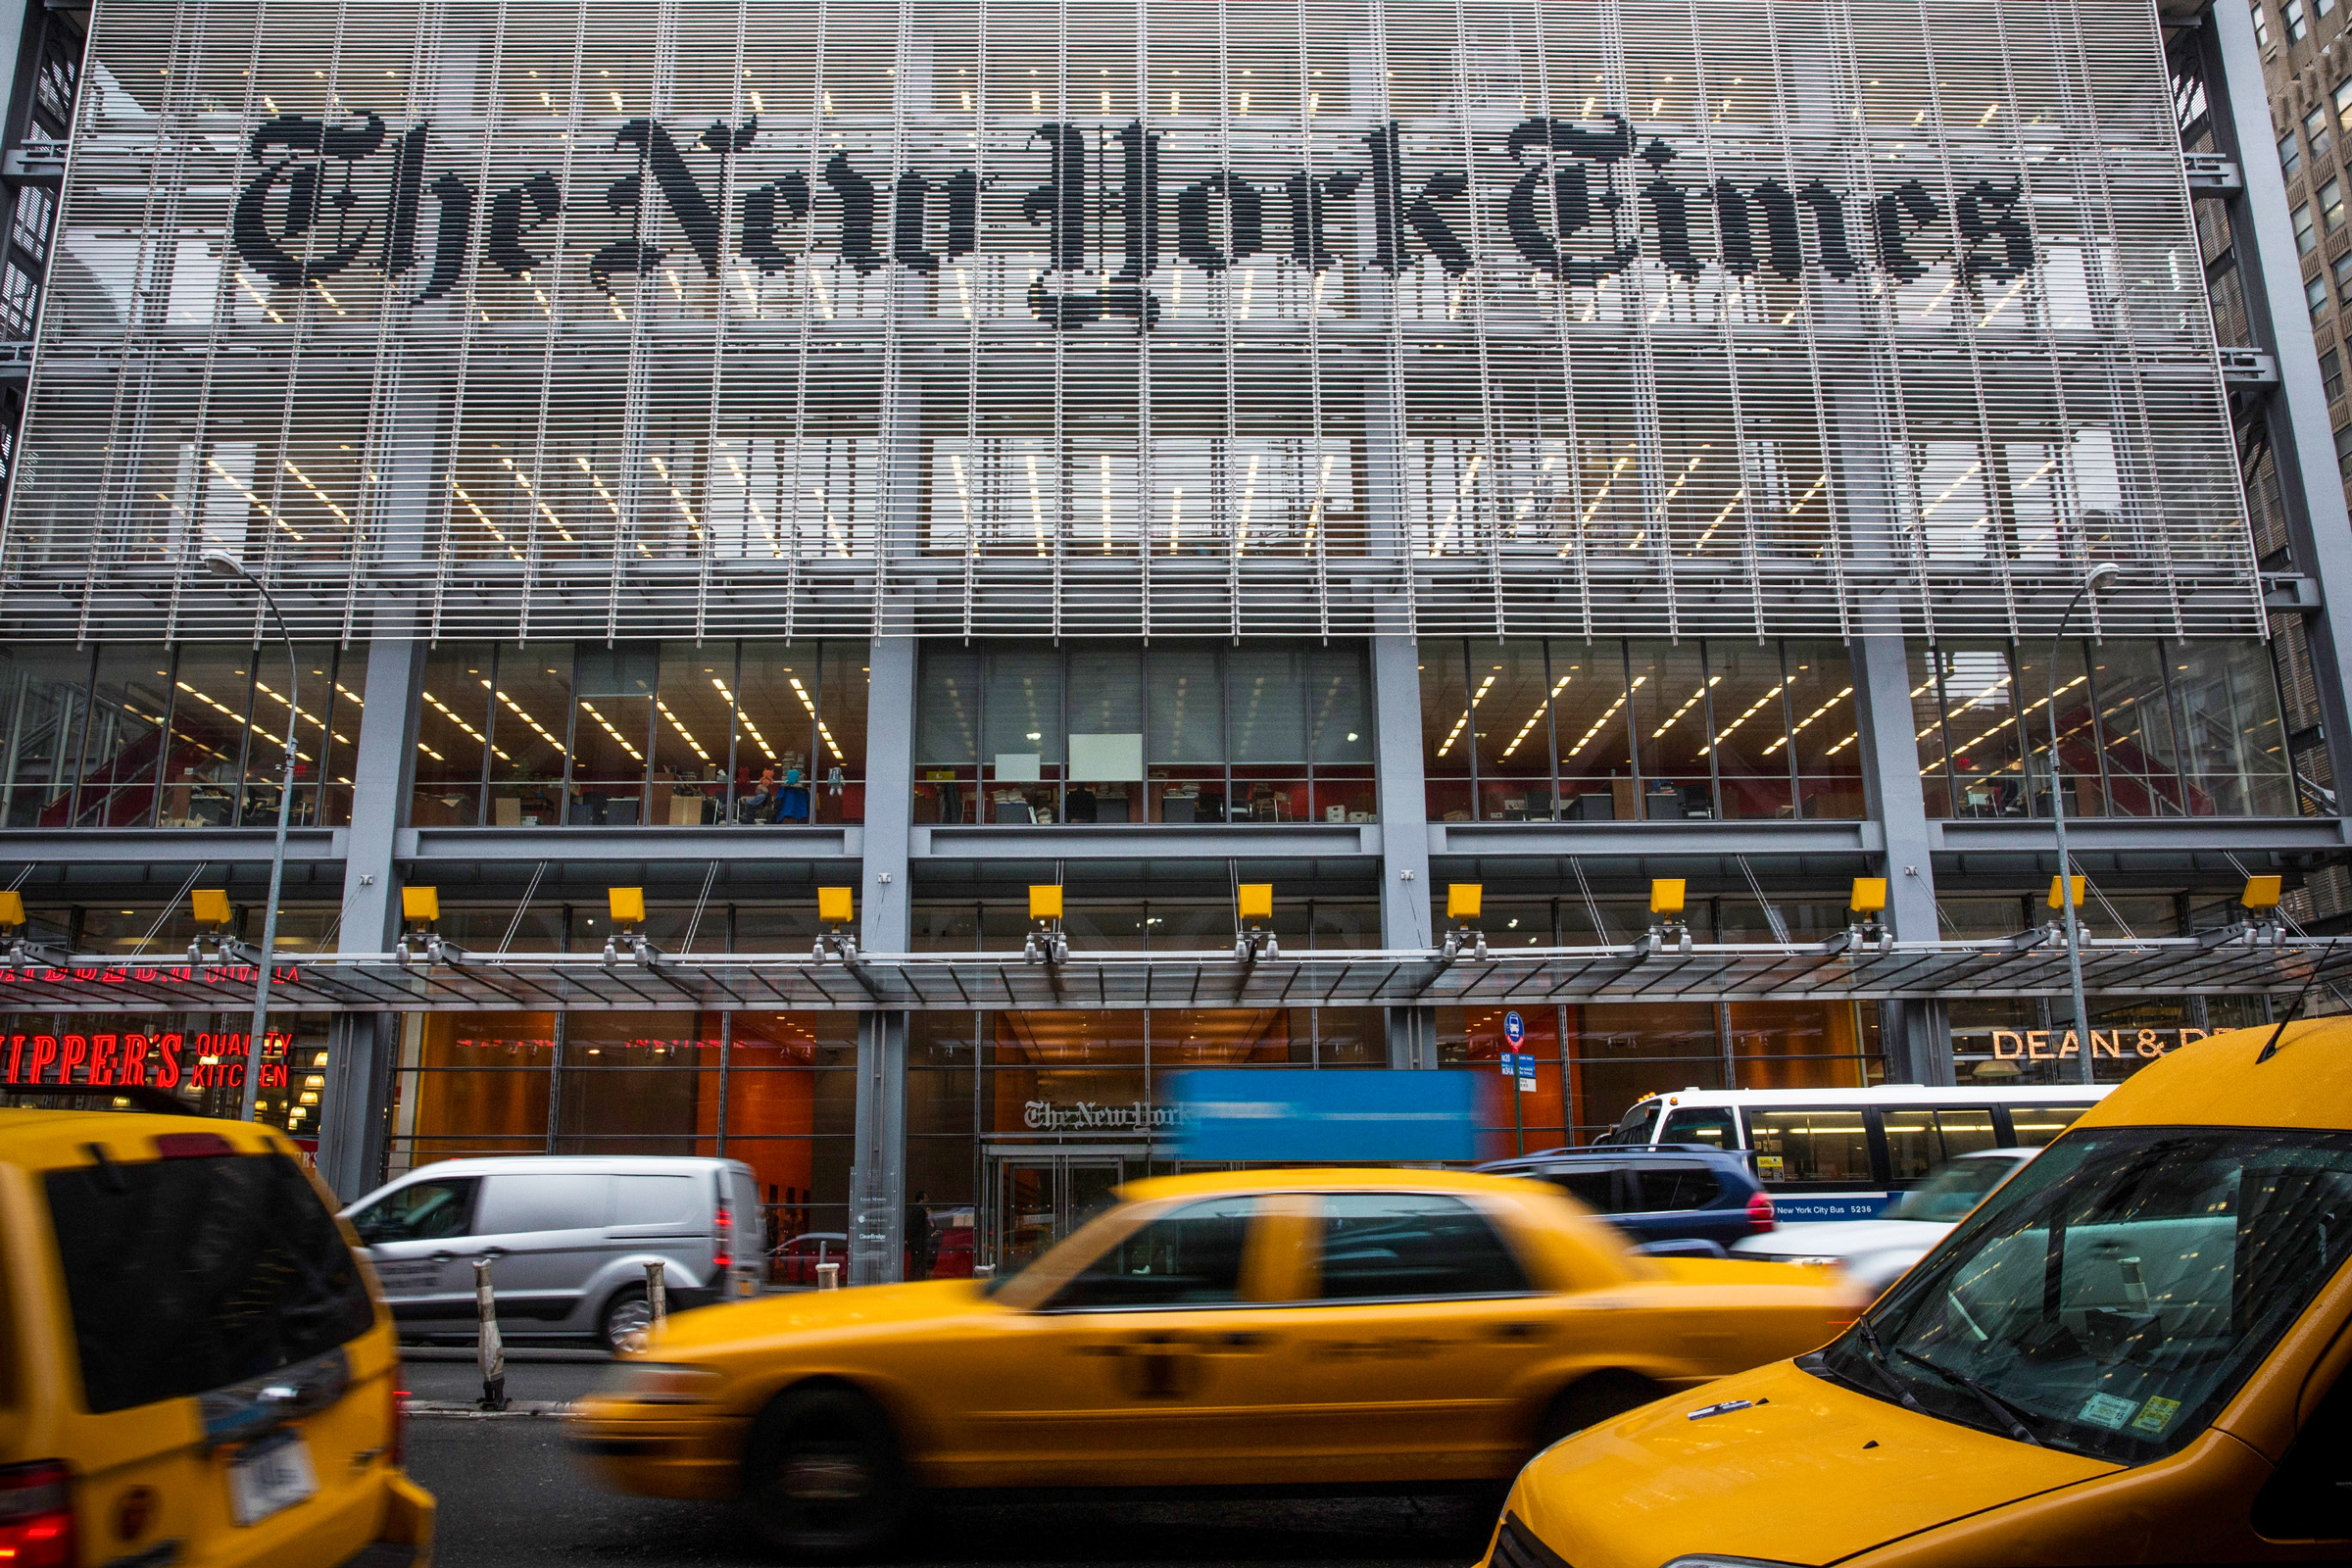 Trong một bài báo được xuất bản lần đầu vào cuối tháng 10/2020, The New York Times mô tả The Epoch Times là “một trong những nhà xuất bản kỹ thuật số quyền lực nhất đất nước.” (Ảnh: Andrew Burton/Getty Images)